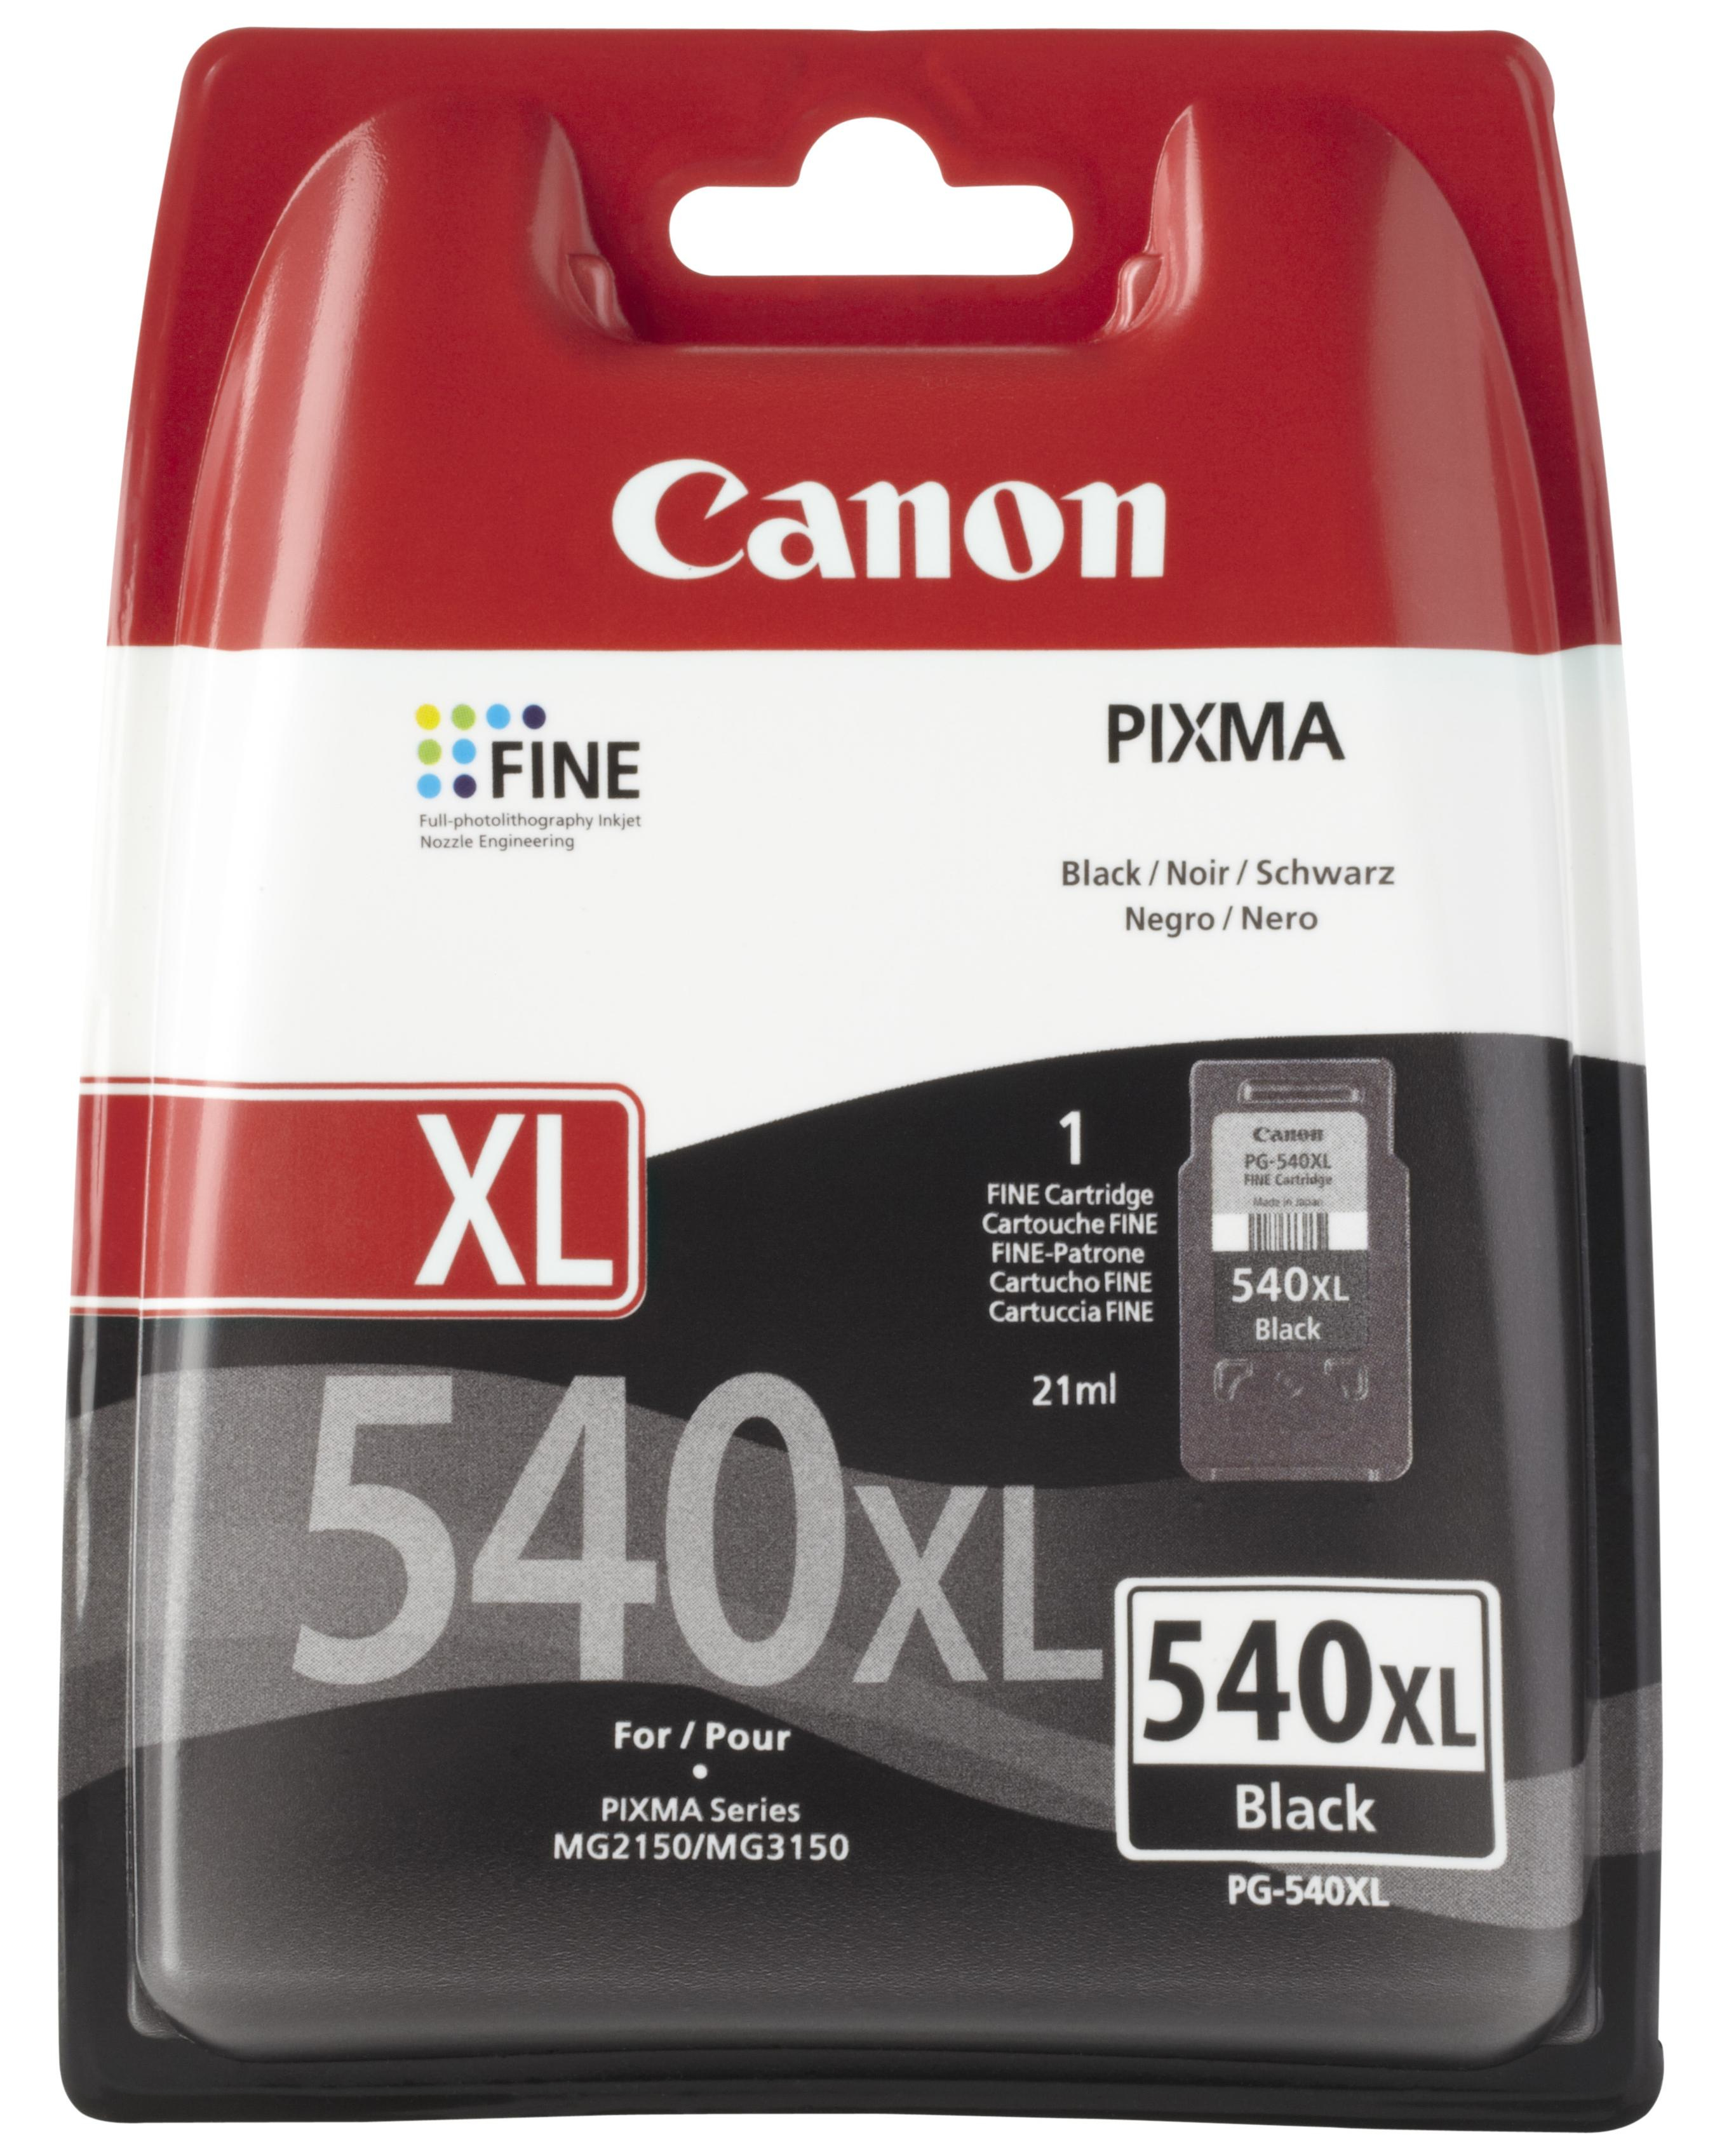 Canon PG-575 XL kompatibel + CL-576 XL kompatibel (Druckerpatronen 2er Set)